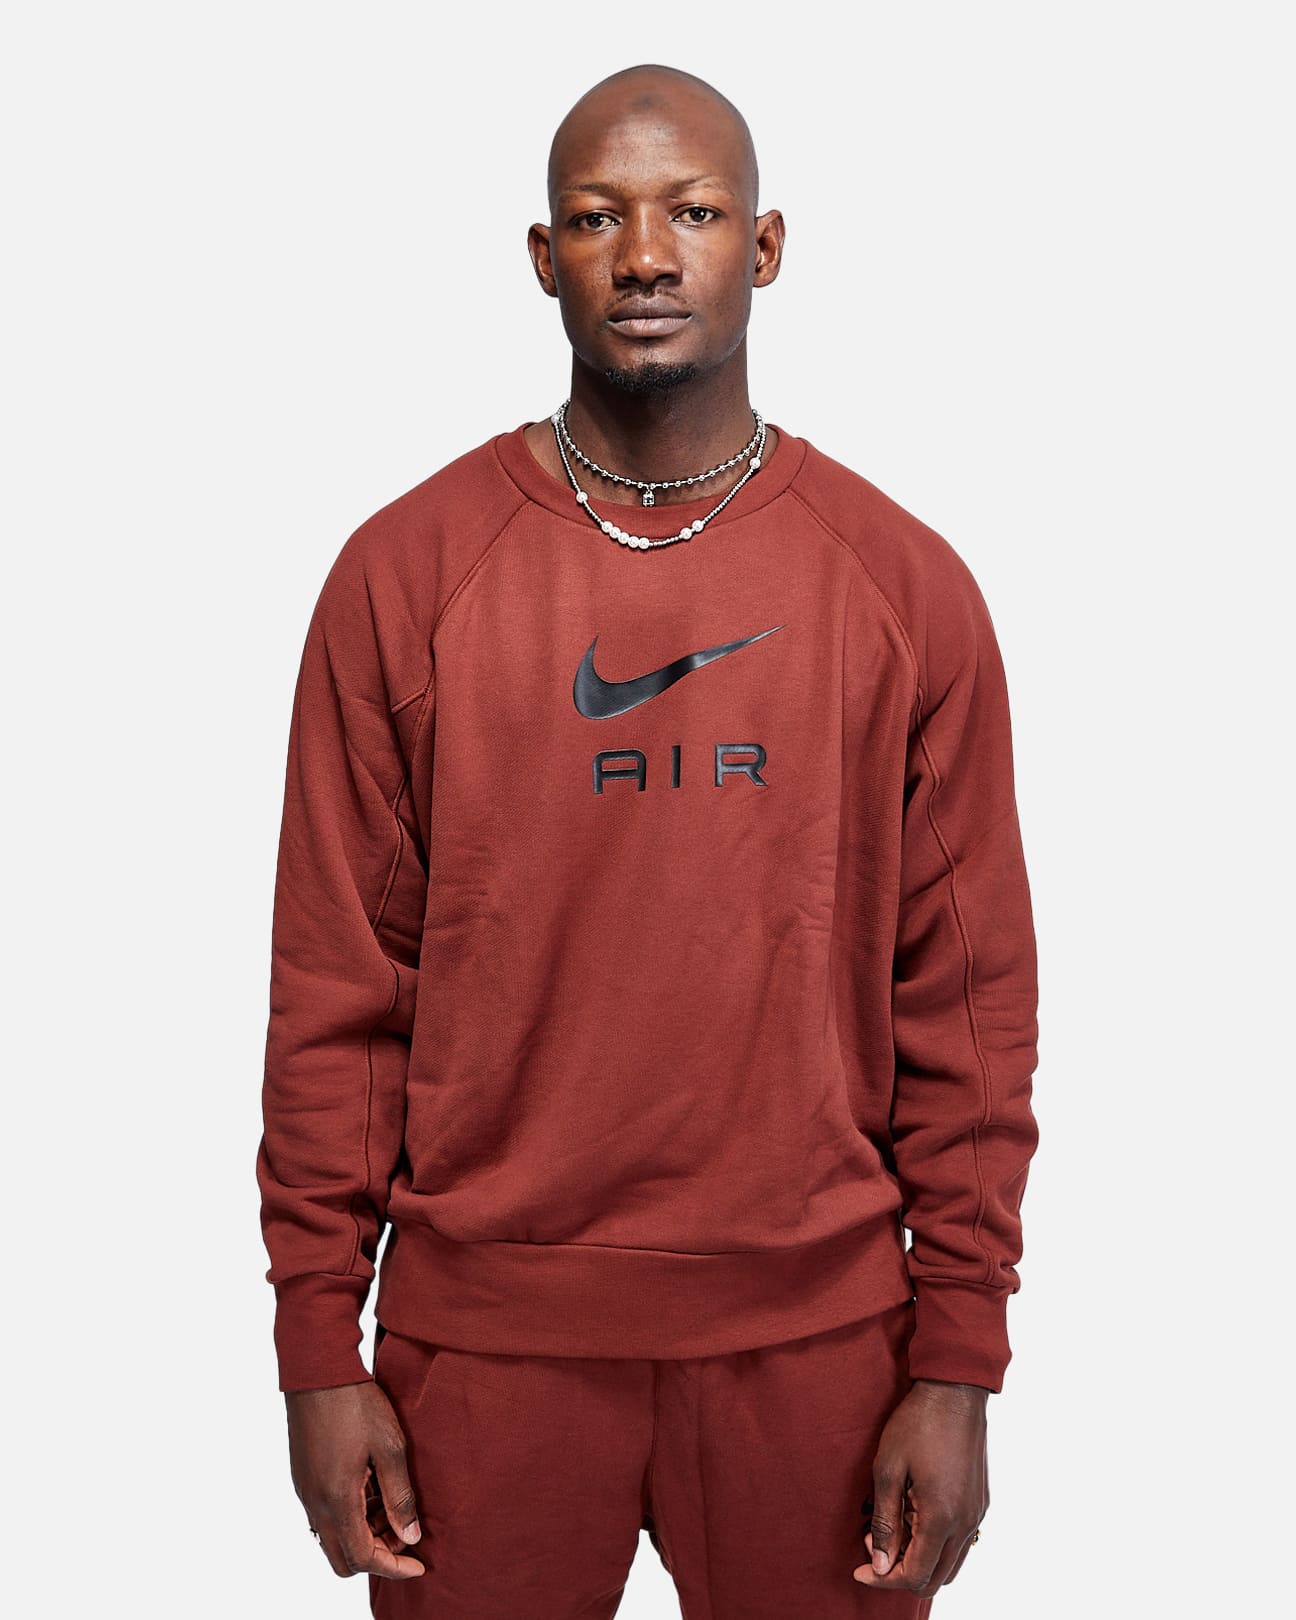 Nike Air-Sweatshirt – Marron/Schwarz